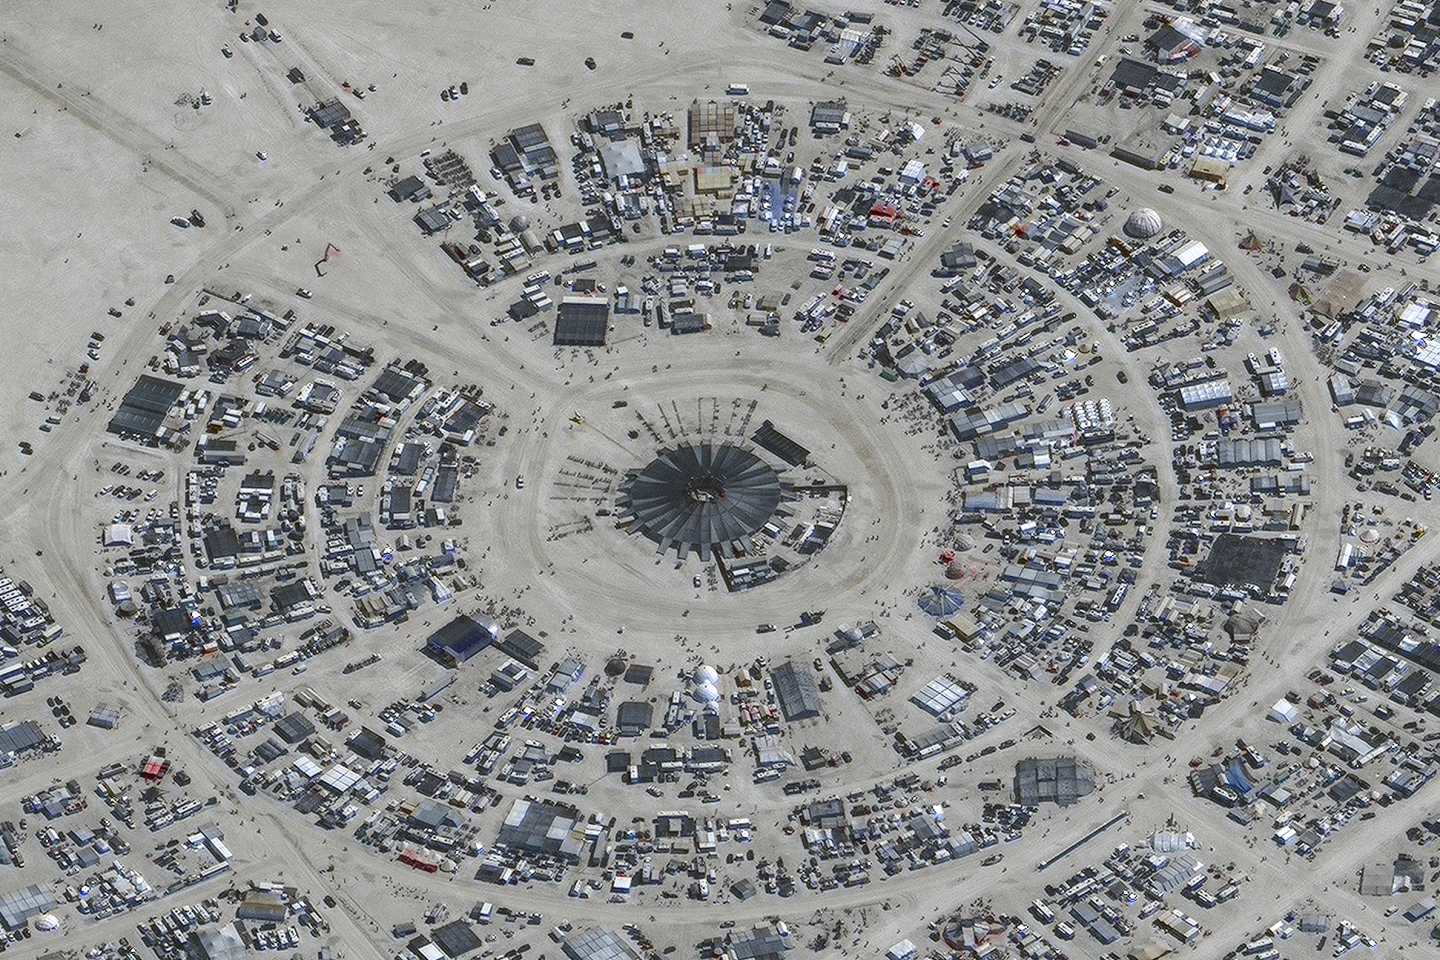 Burning Man Revelers Begin Exodus After Flooding Left Tens Of Thousands Stranded In Nevada Desert